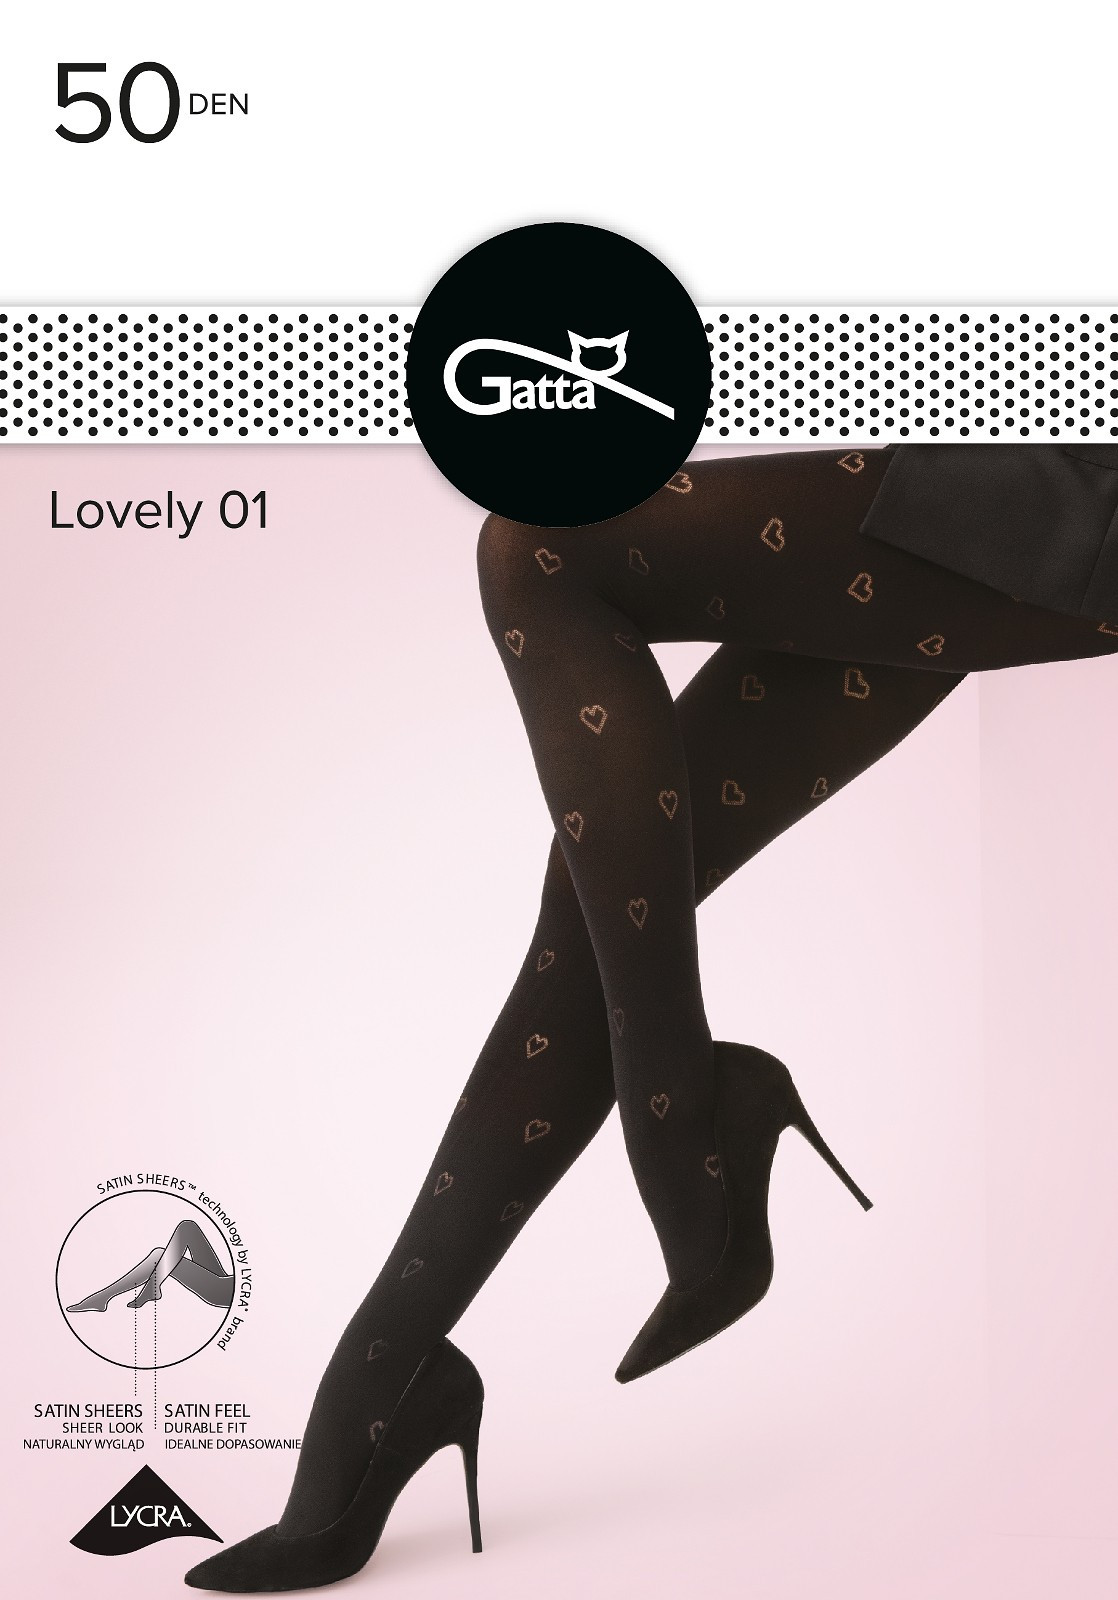 Dámské punčochové kalhoty Lovely model 18028185 50 den 24 - Gatta Barva: nero, Velikost: 4-L